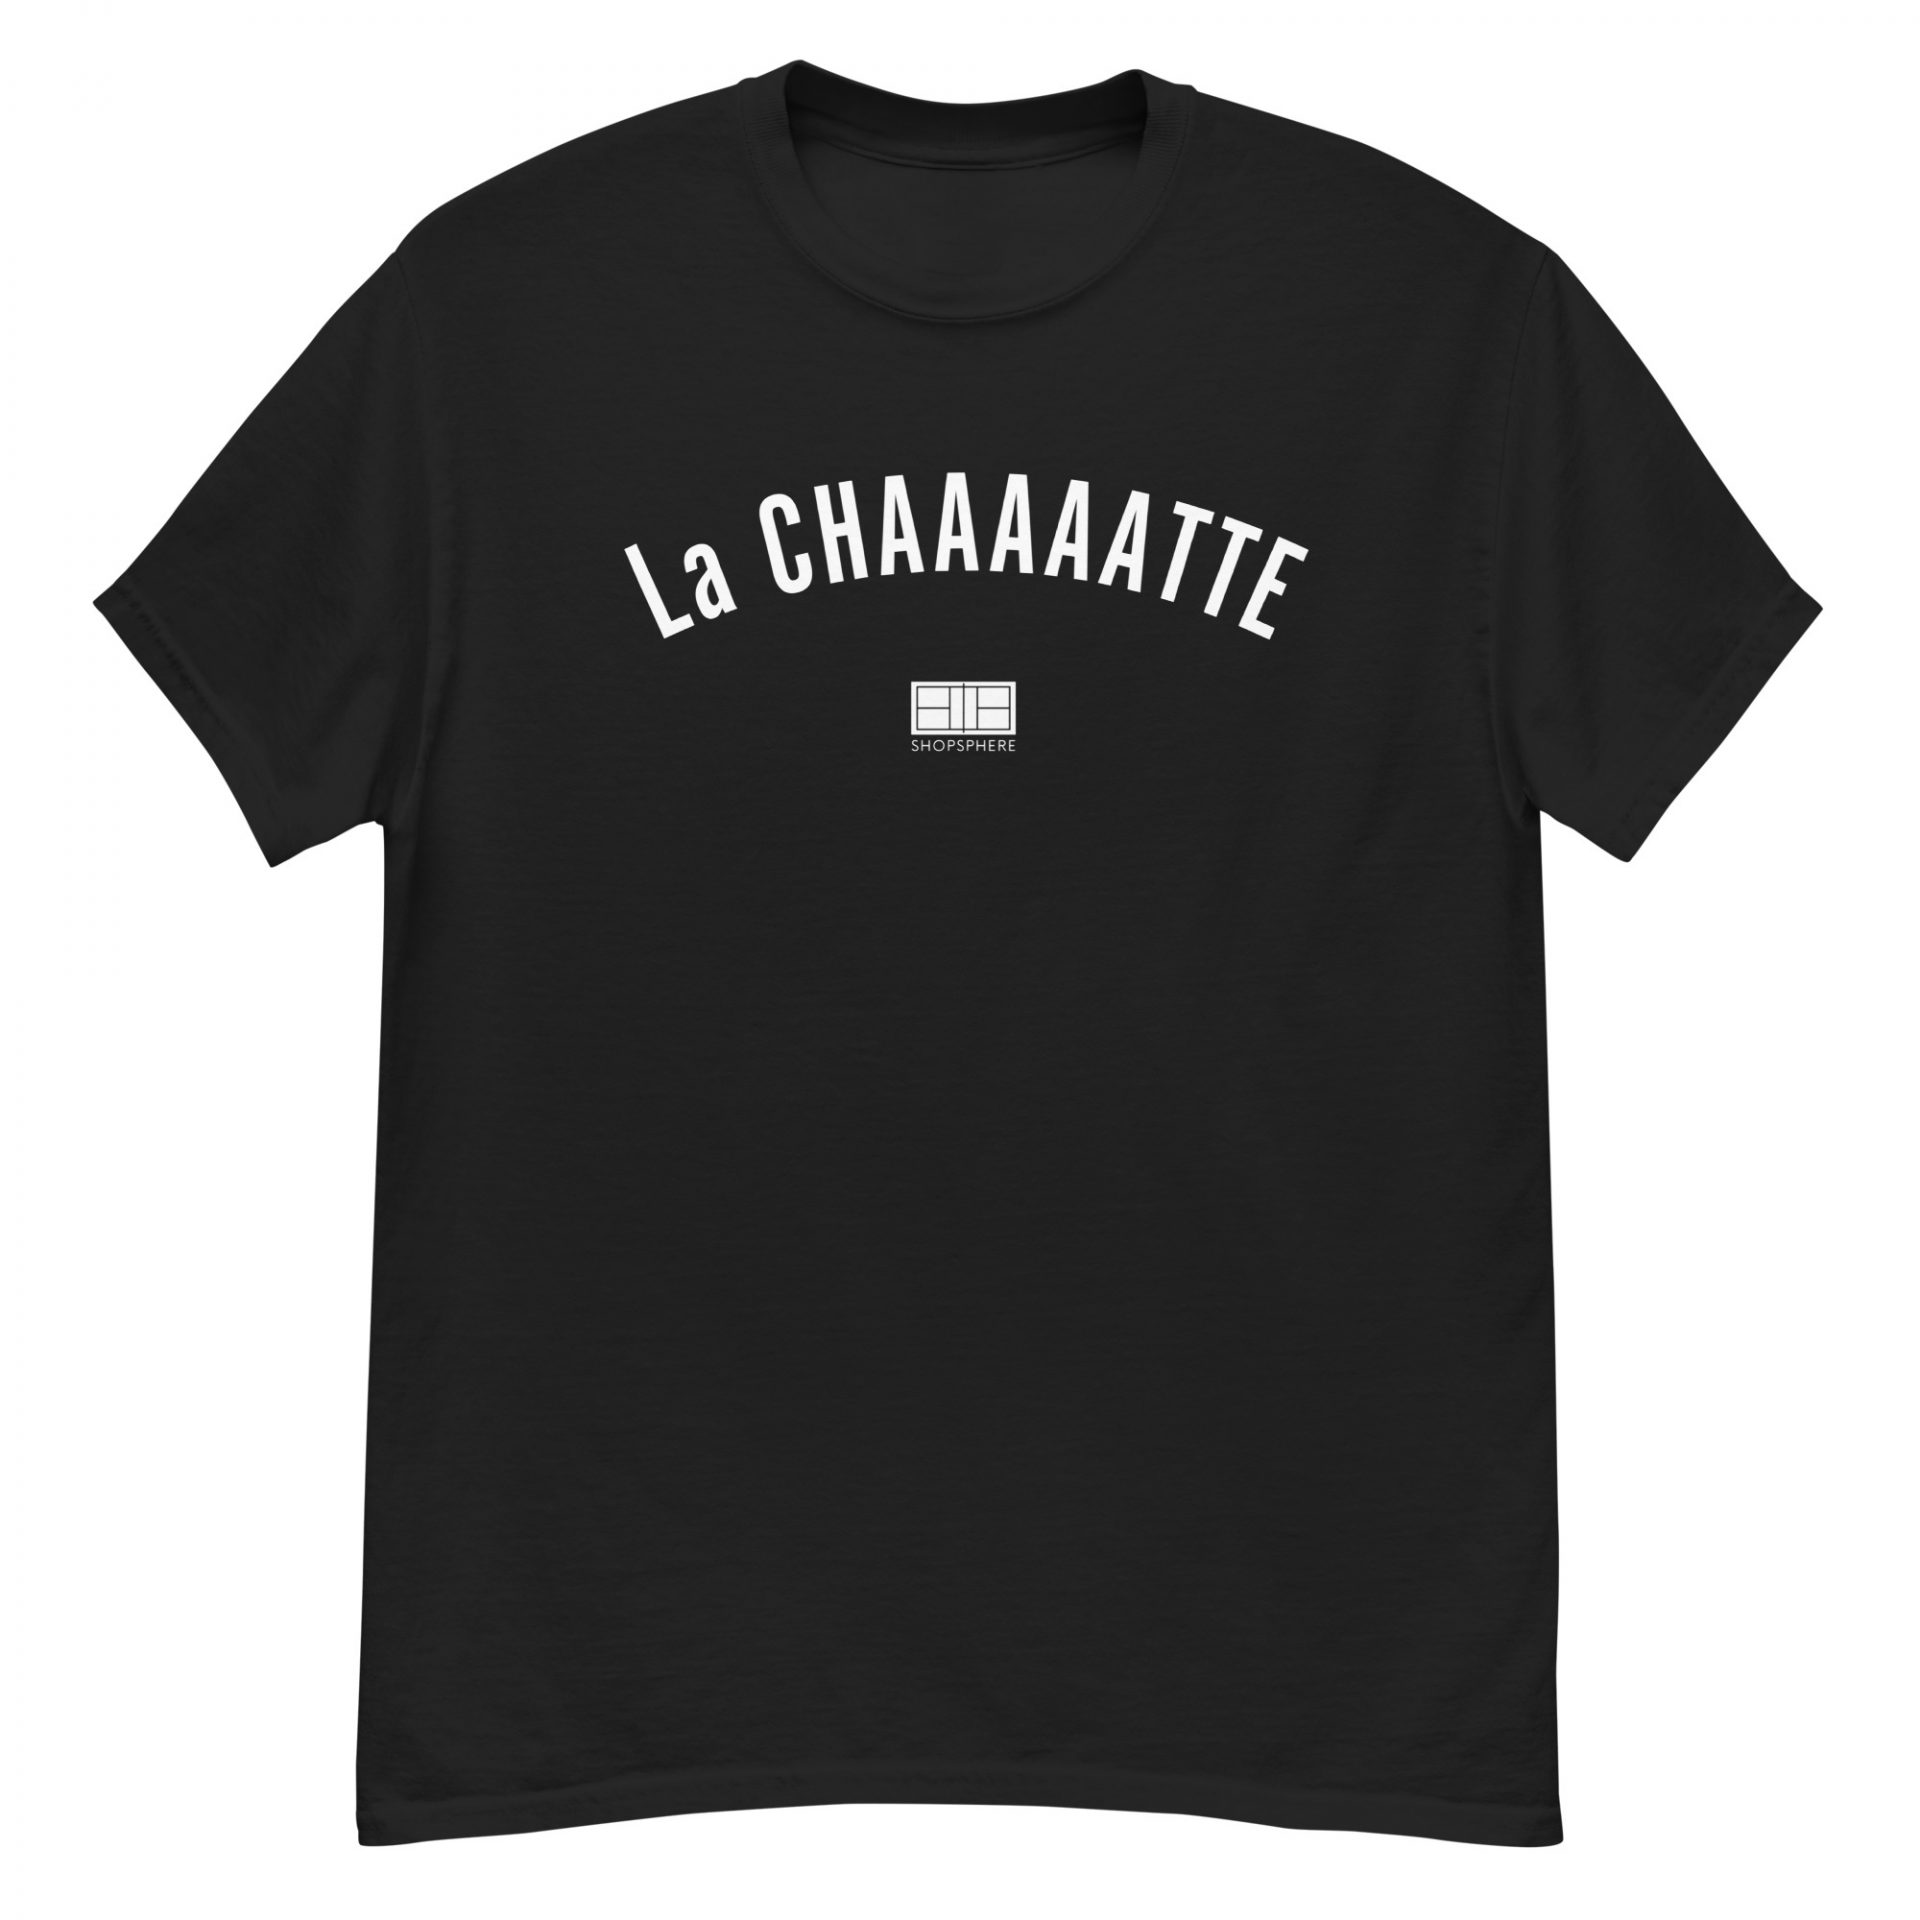 T-shirt Classique Unisexe “La CHATTE”